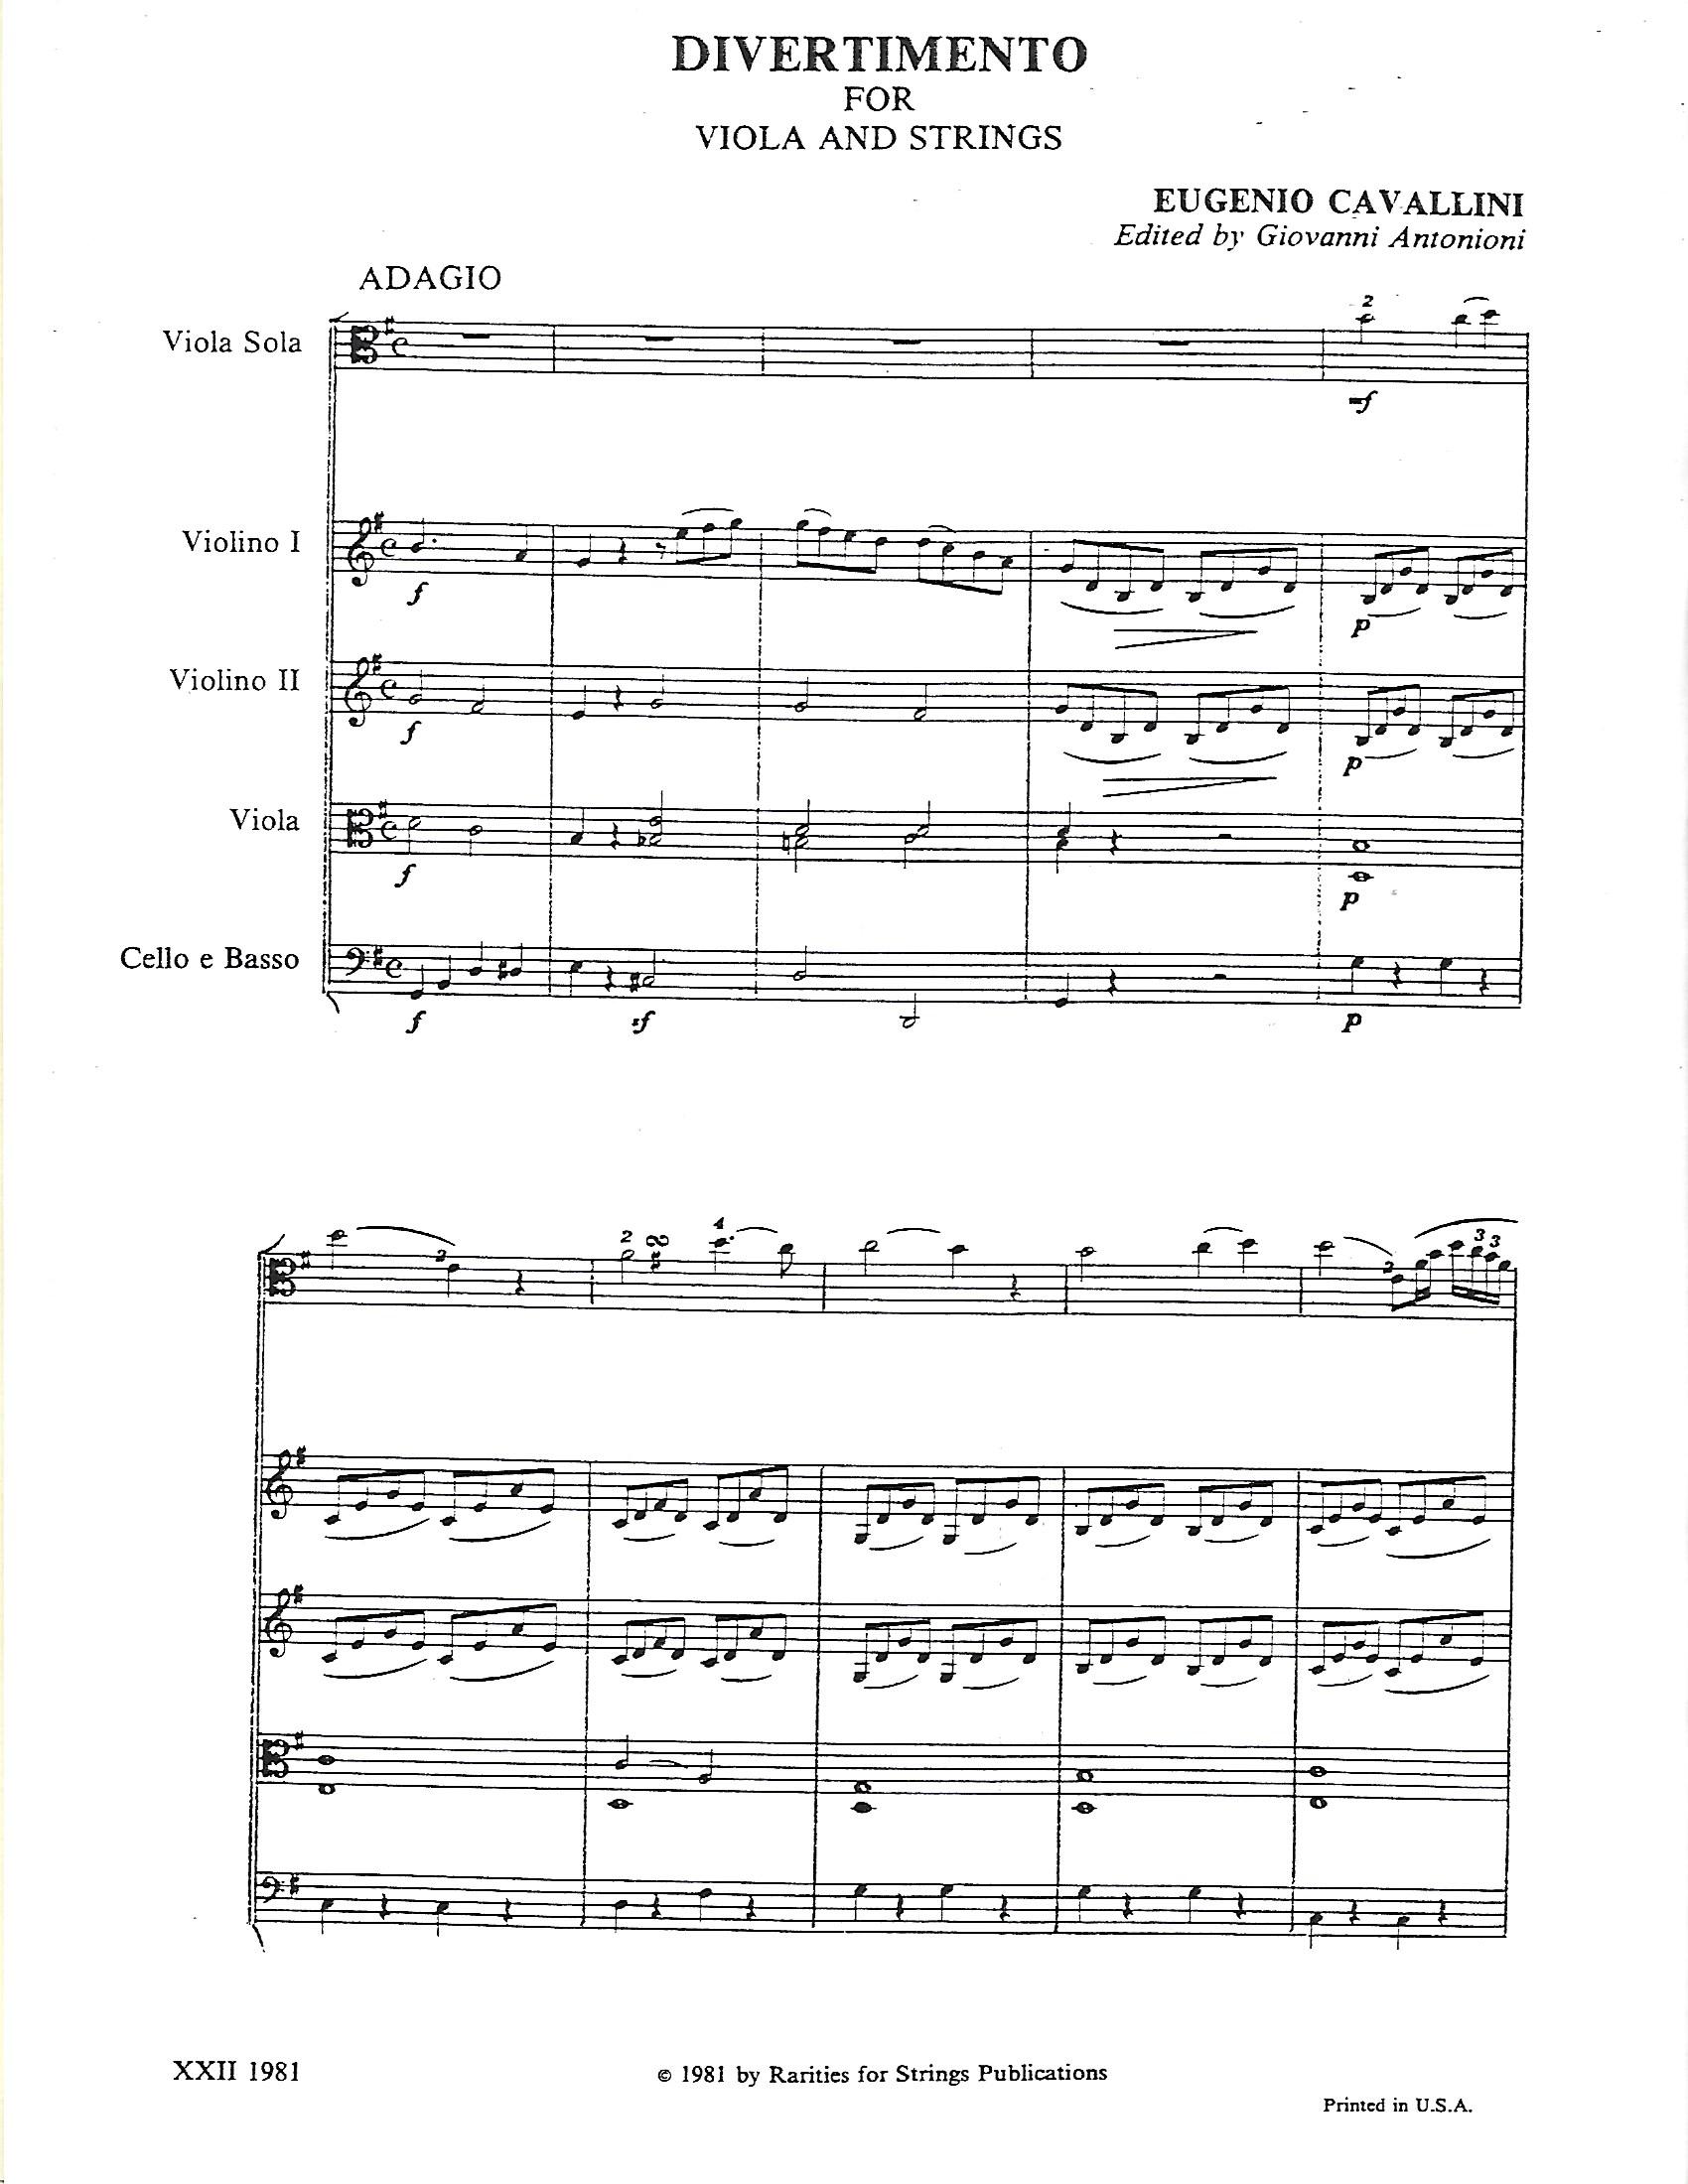 Cavallini, Eugenio - Divertimento for Viola & Strings - Music